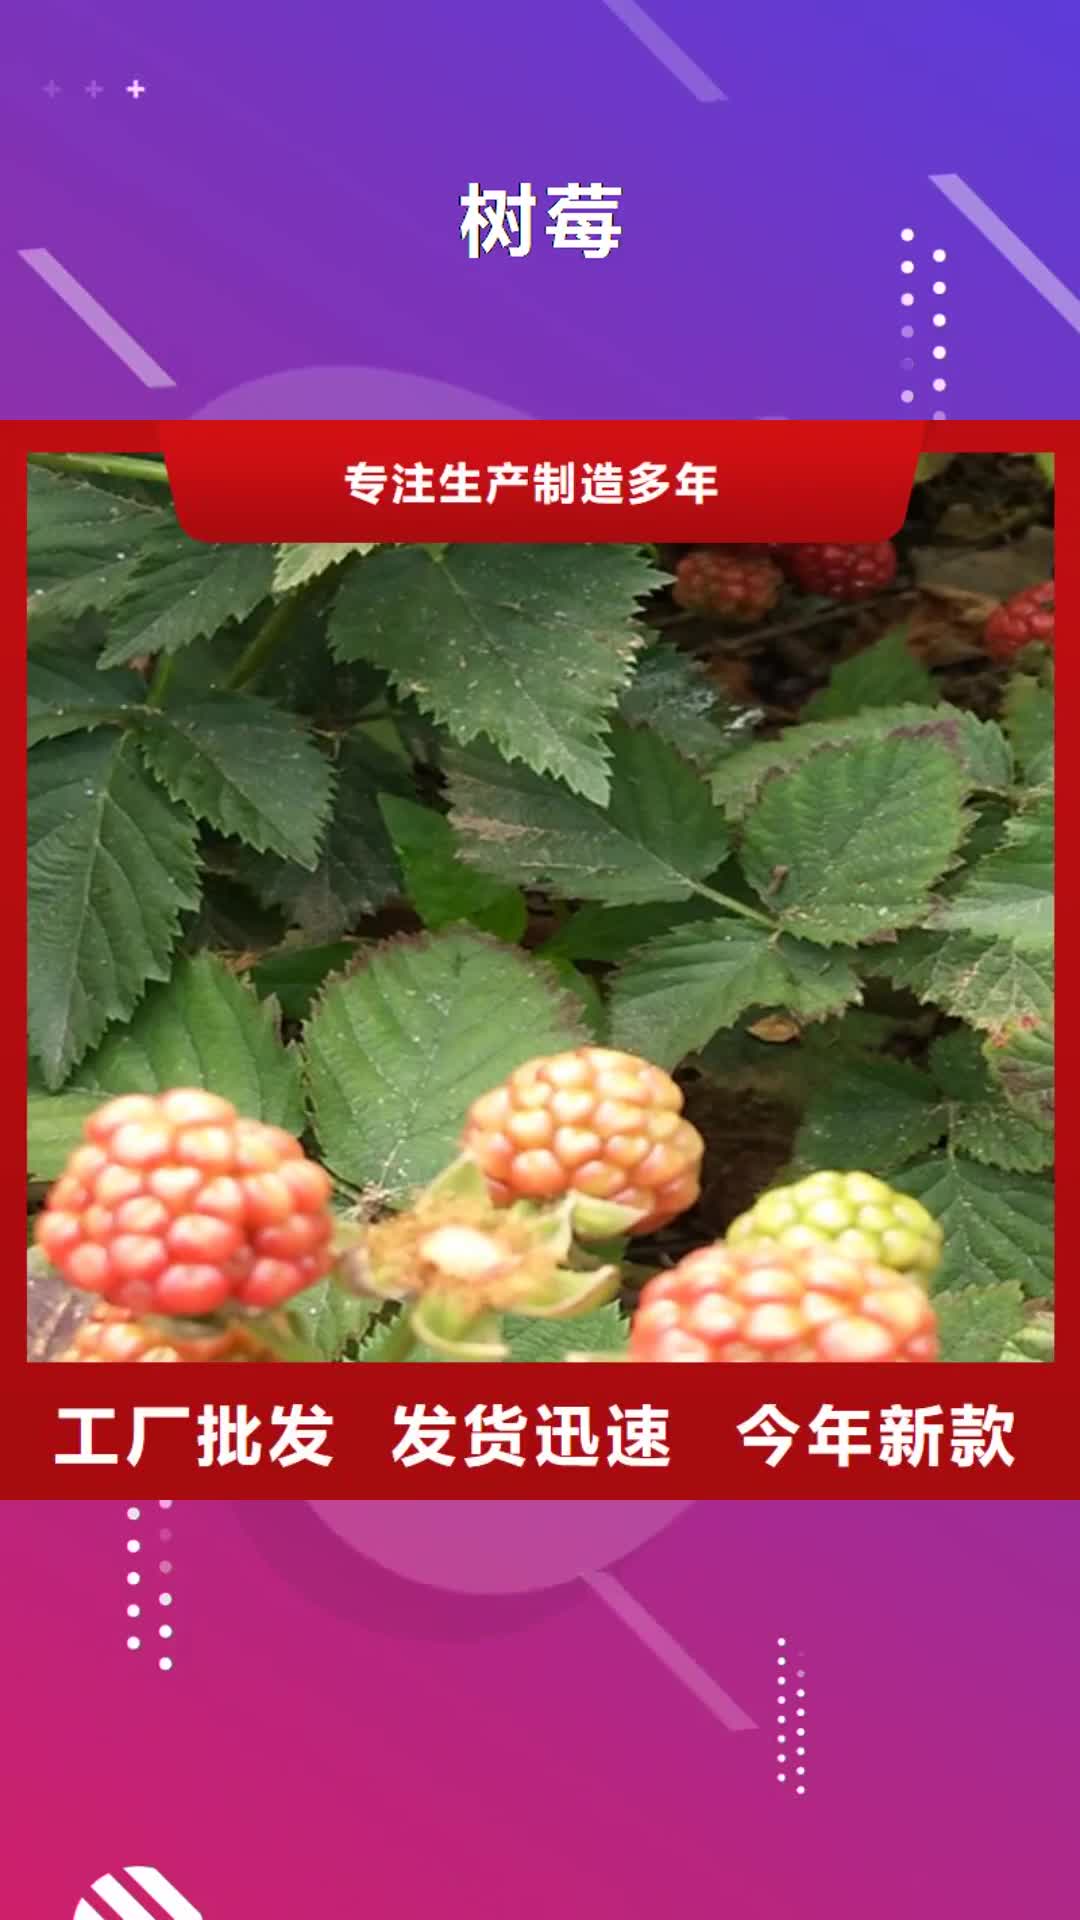 【安徽 树莓,石榴树诚信经营】